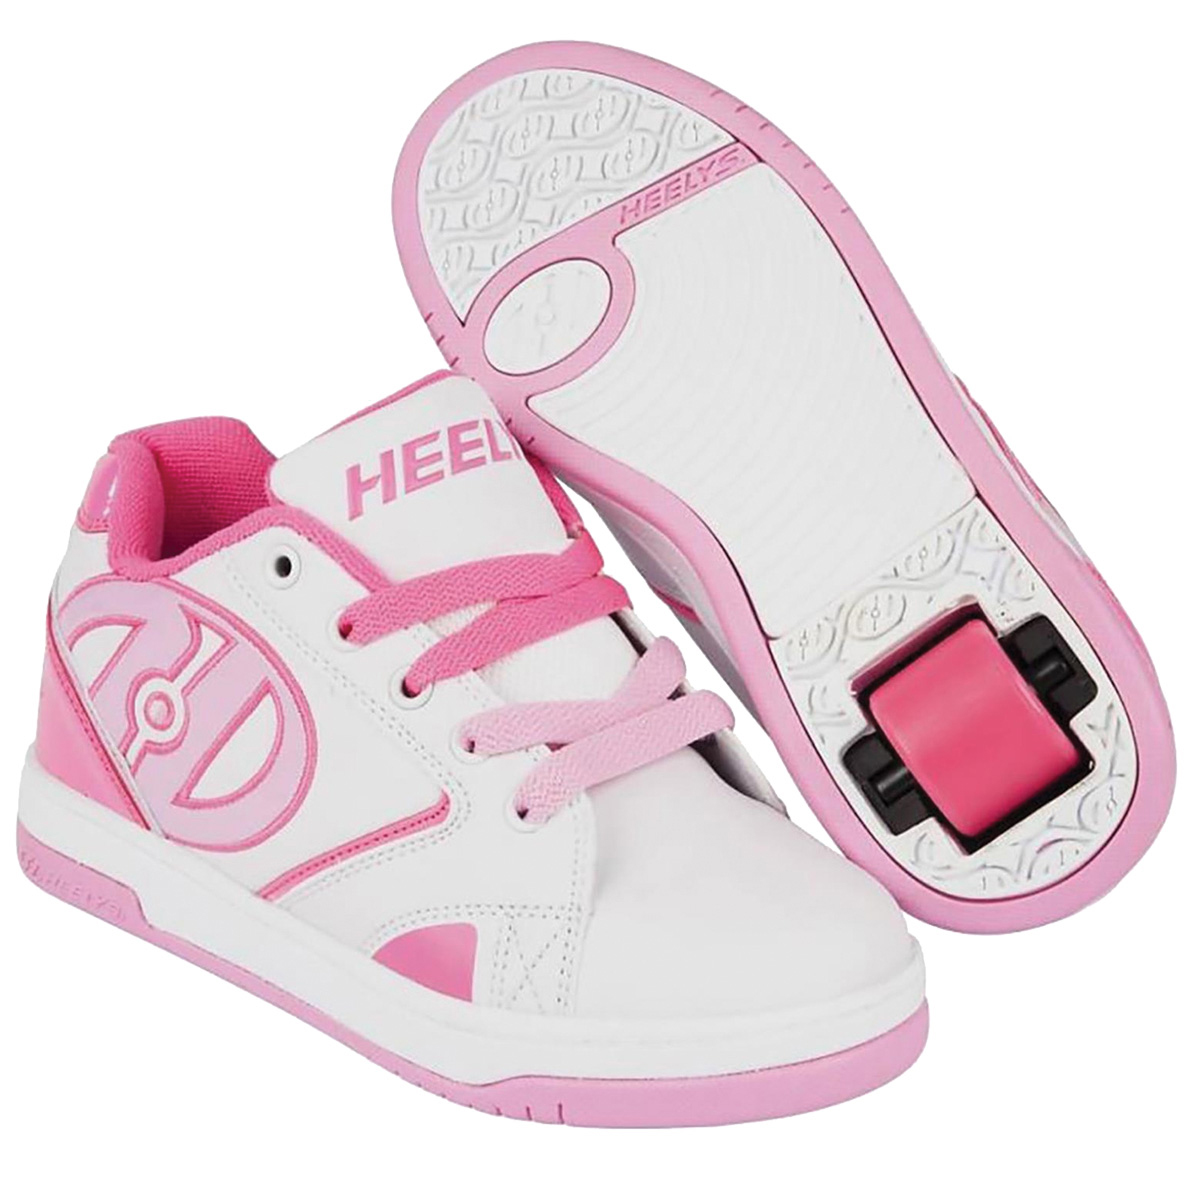 Кроссовки роликовые для девочки Heelys, цвет: белый, розовый. 770605. Размер 39 (38)